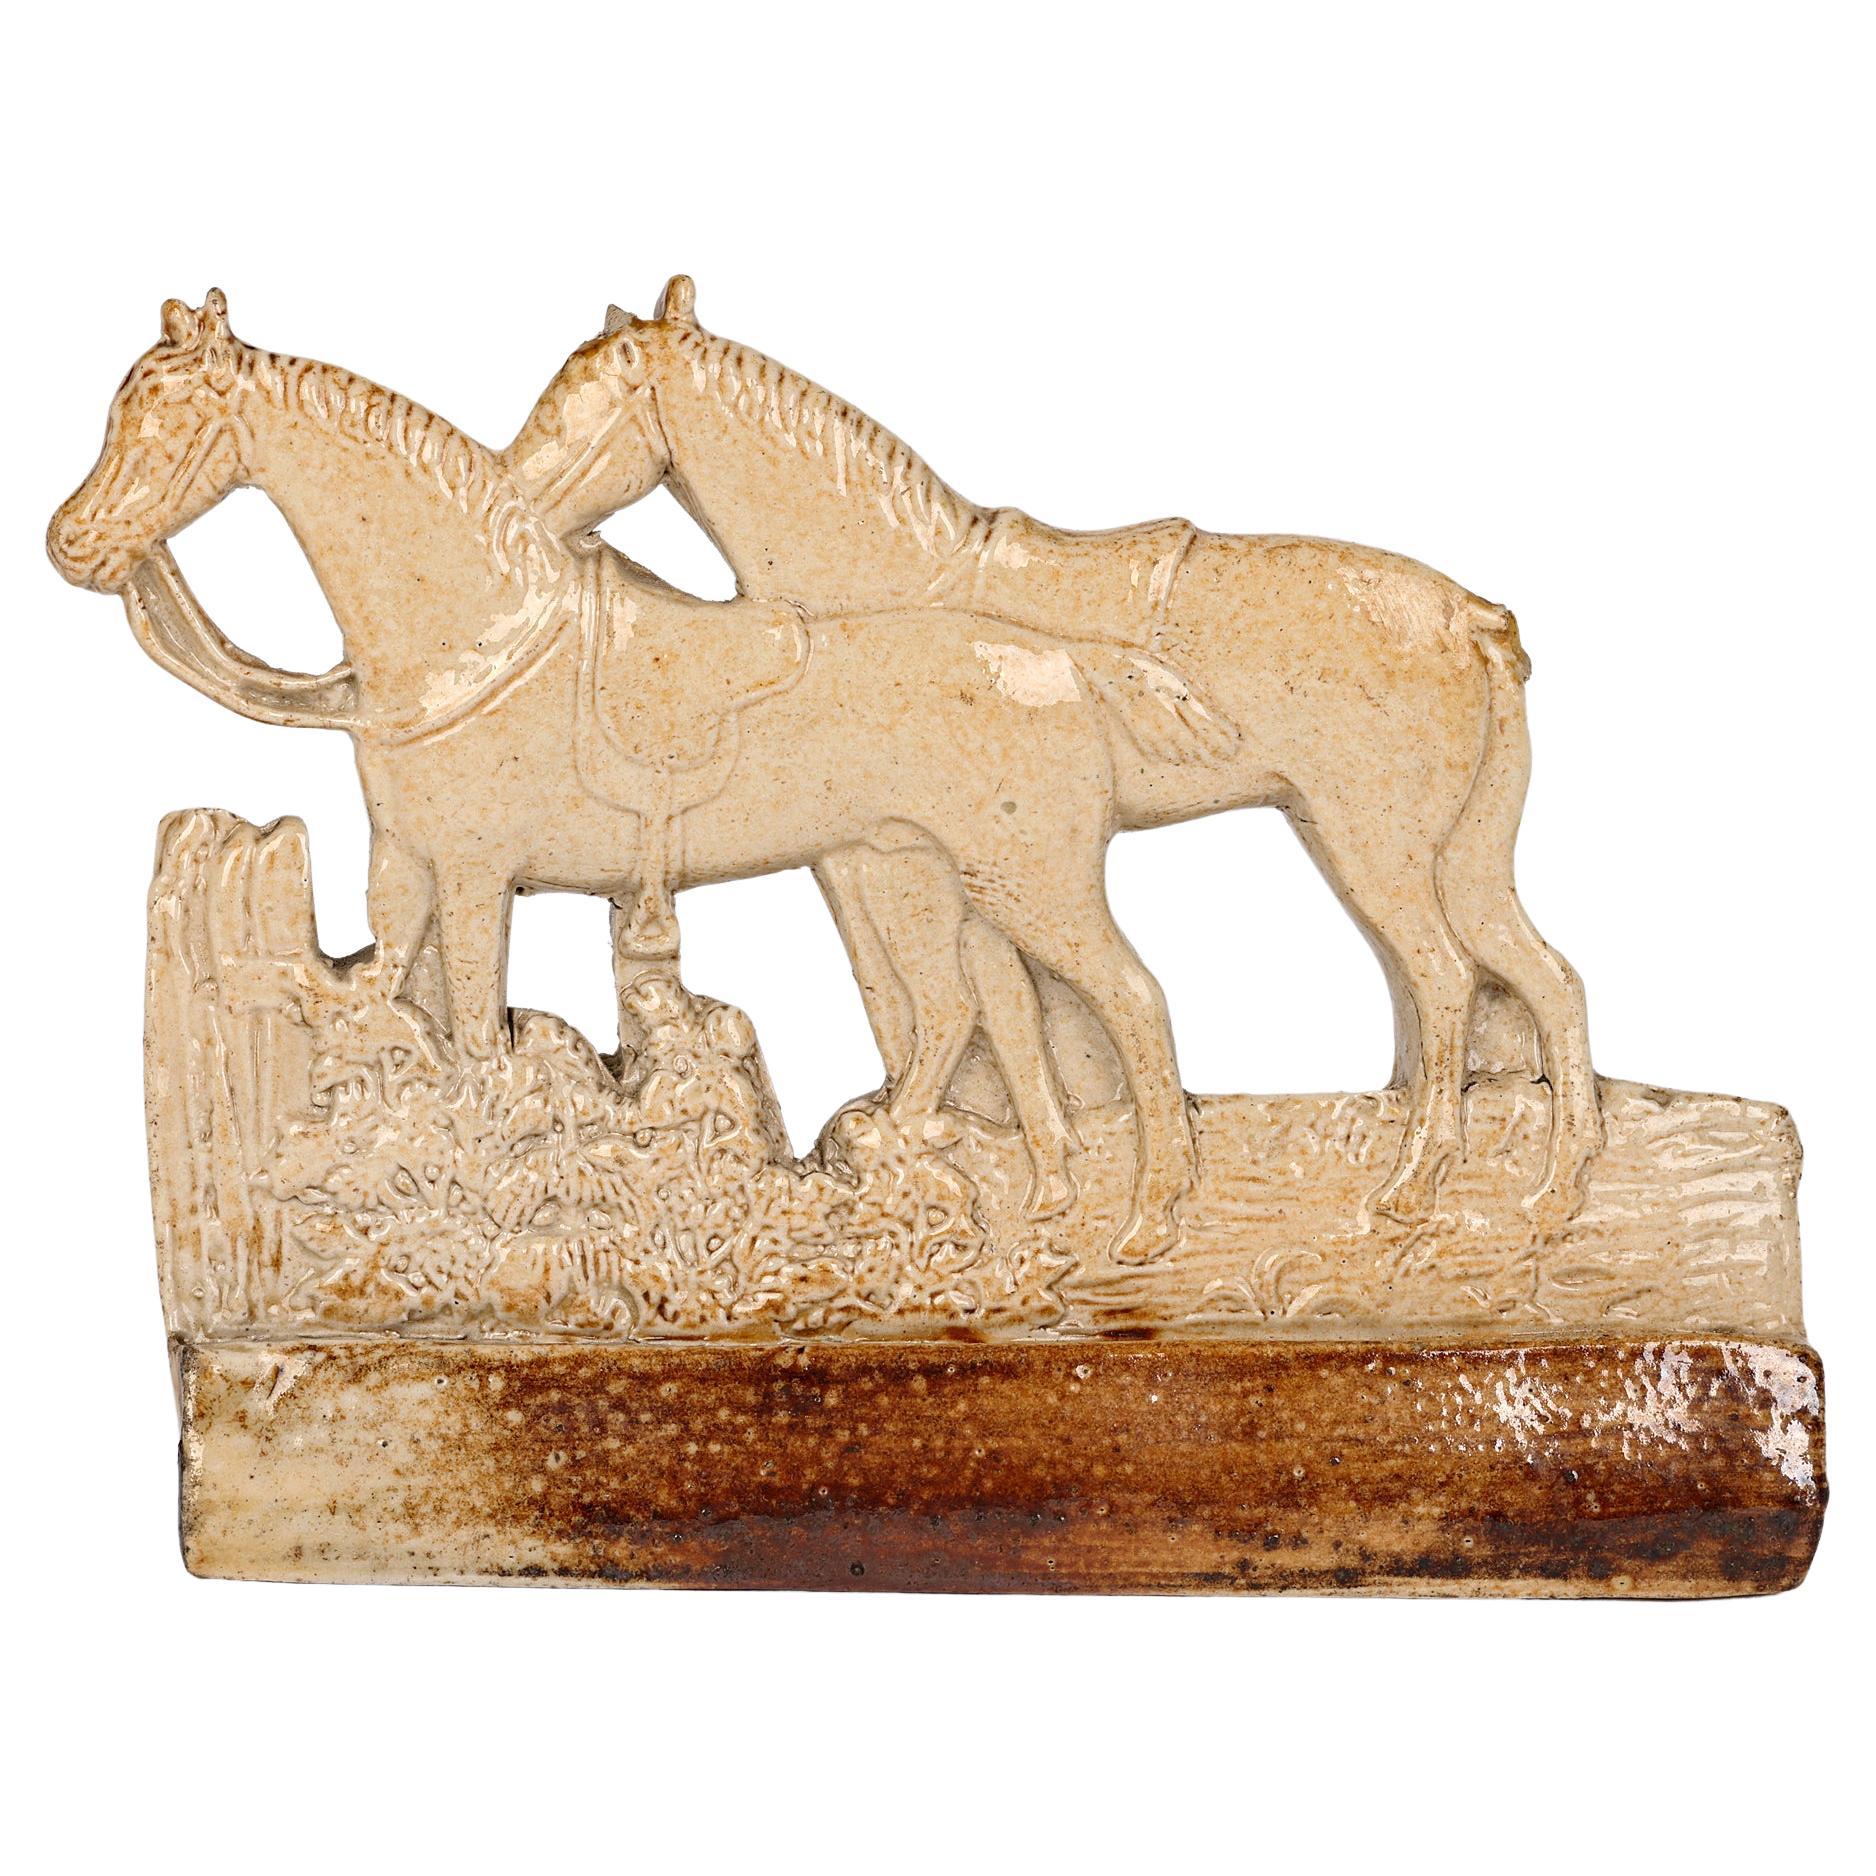 Brampton Rare Salt Glazed Stoneware Modell von zwei gesattelten Pferden